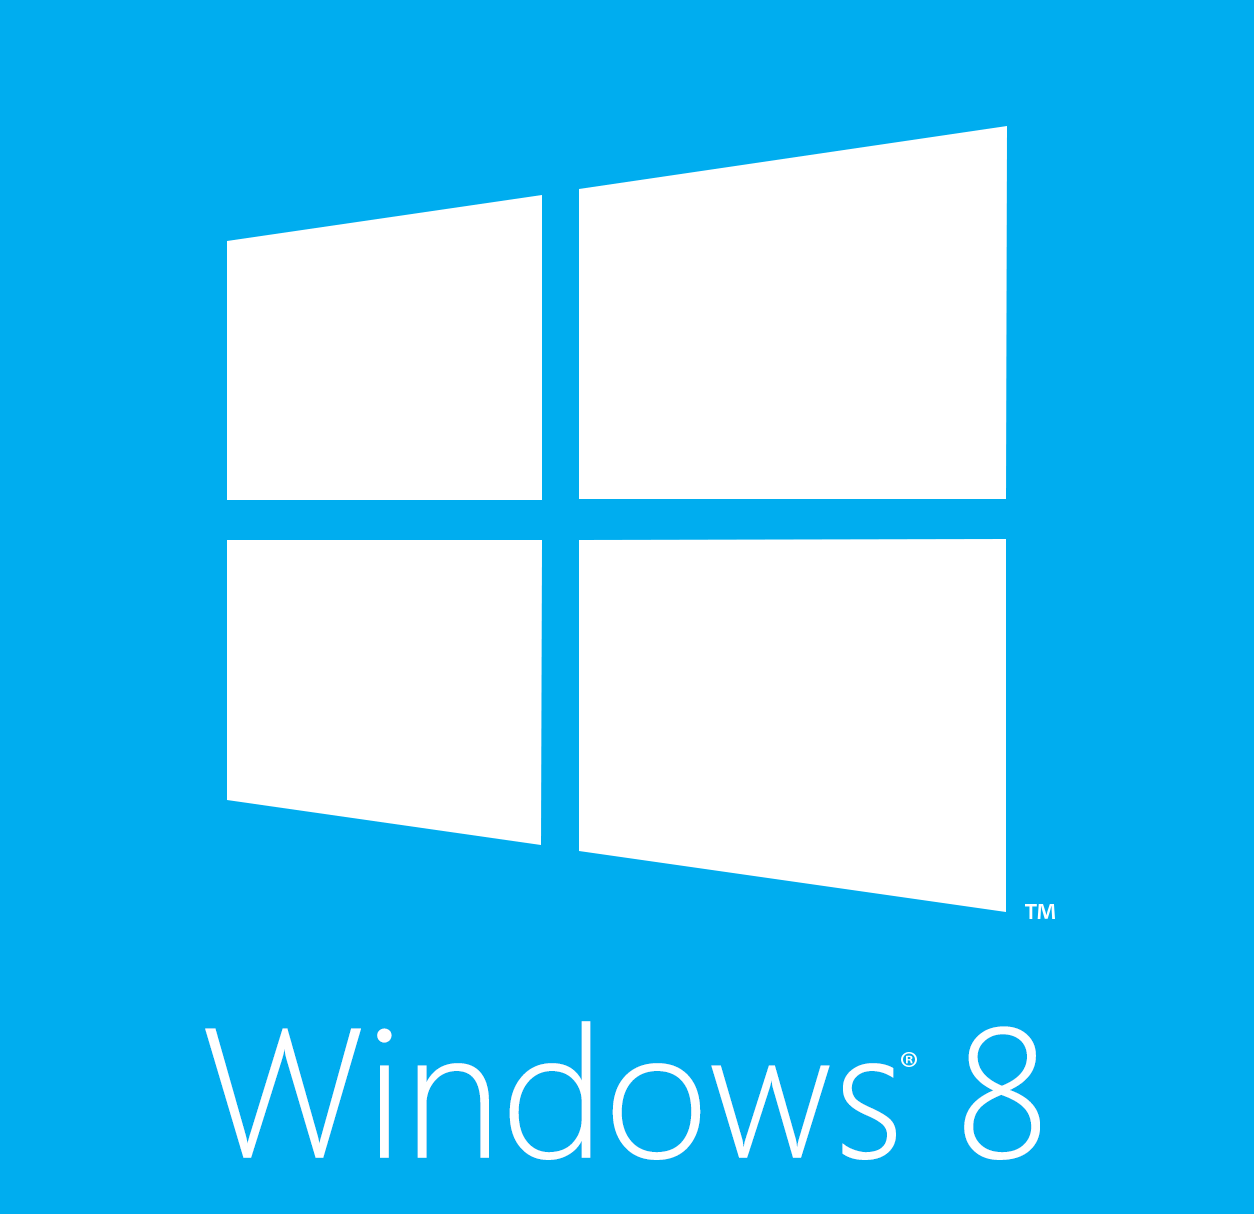 Windows 8 Official Logo - Windows 8 Logos